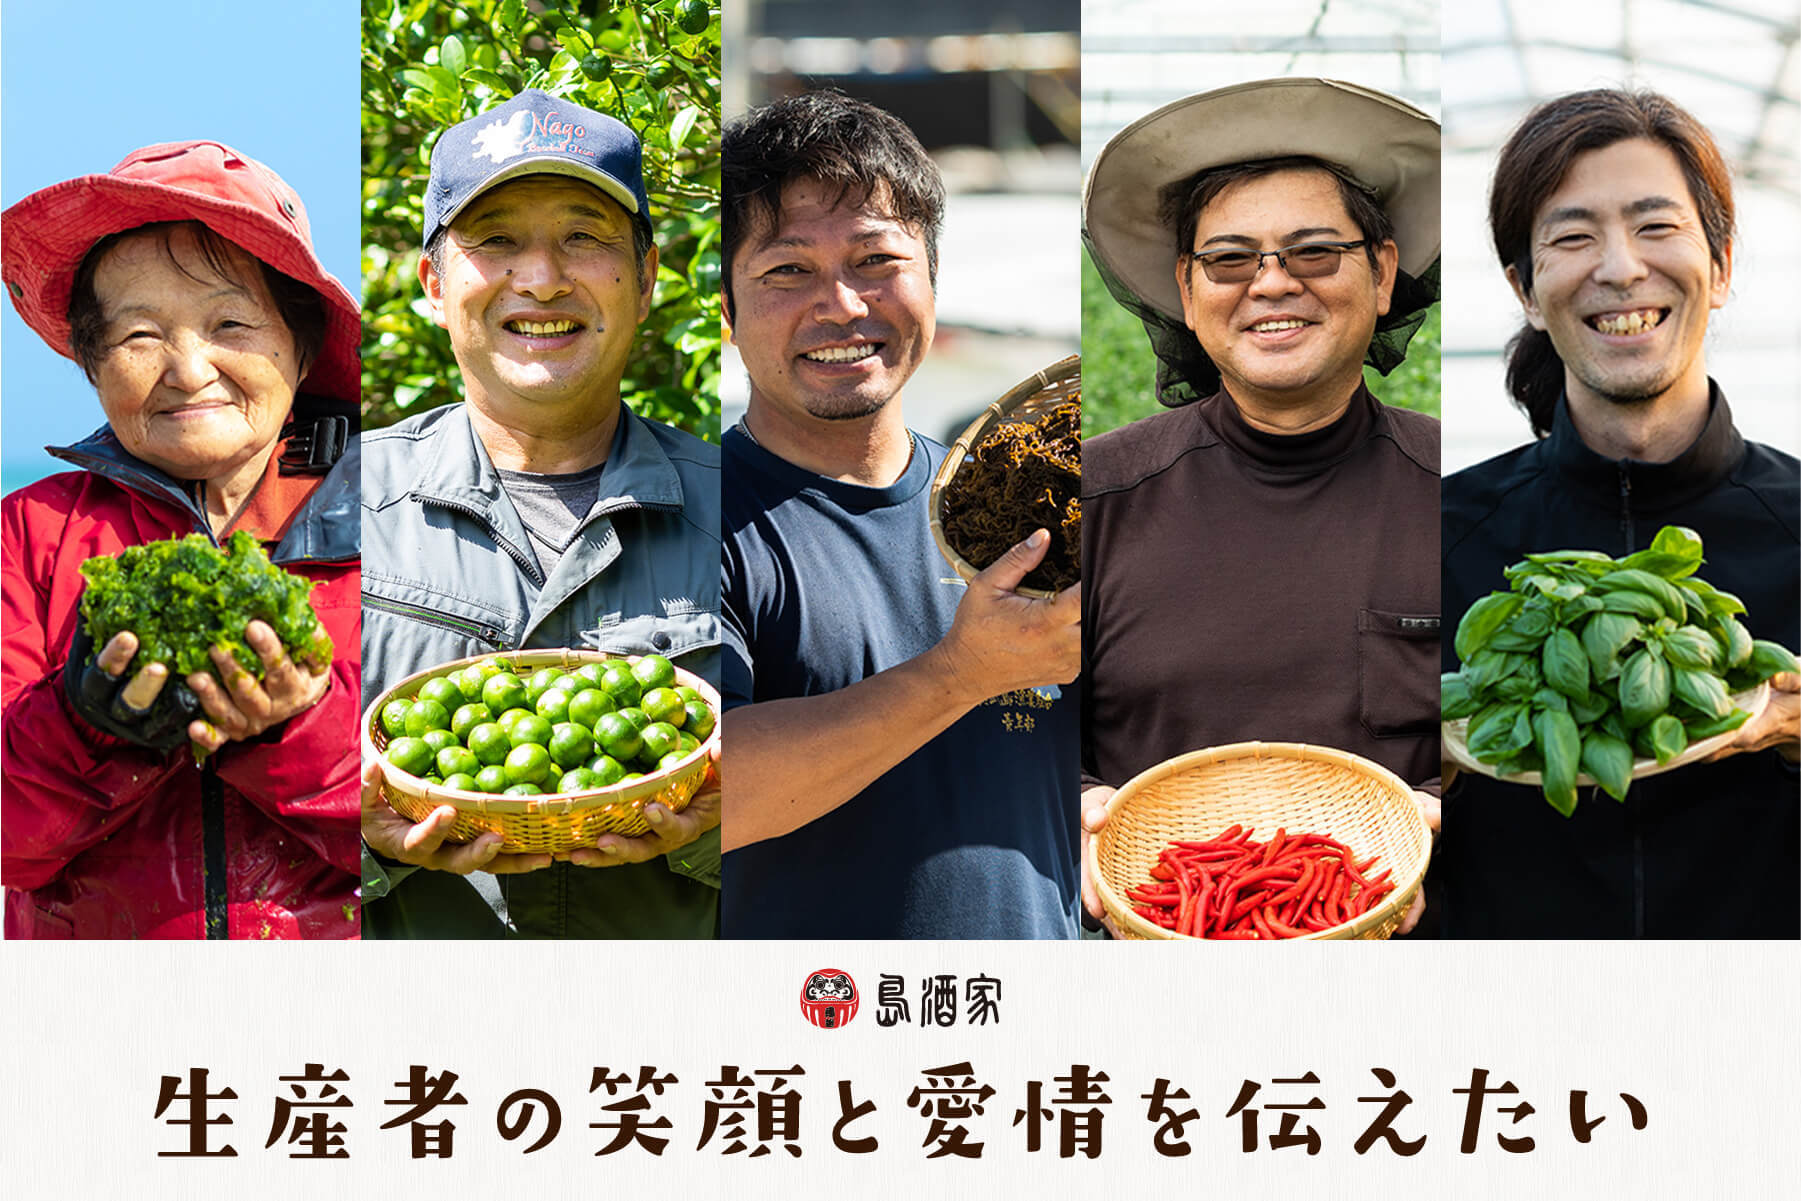 神戸で年間9万人以上来店の
「a la ringo(あら、りんご。)」2号店として
奥入瀬渓流(青森県十和田市)に
「あら、りんご。青森奥入瀬店」がオープン！